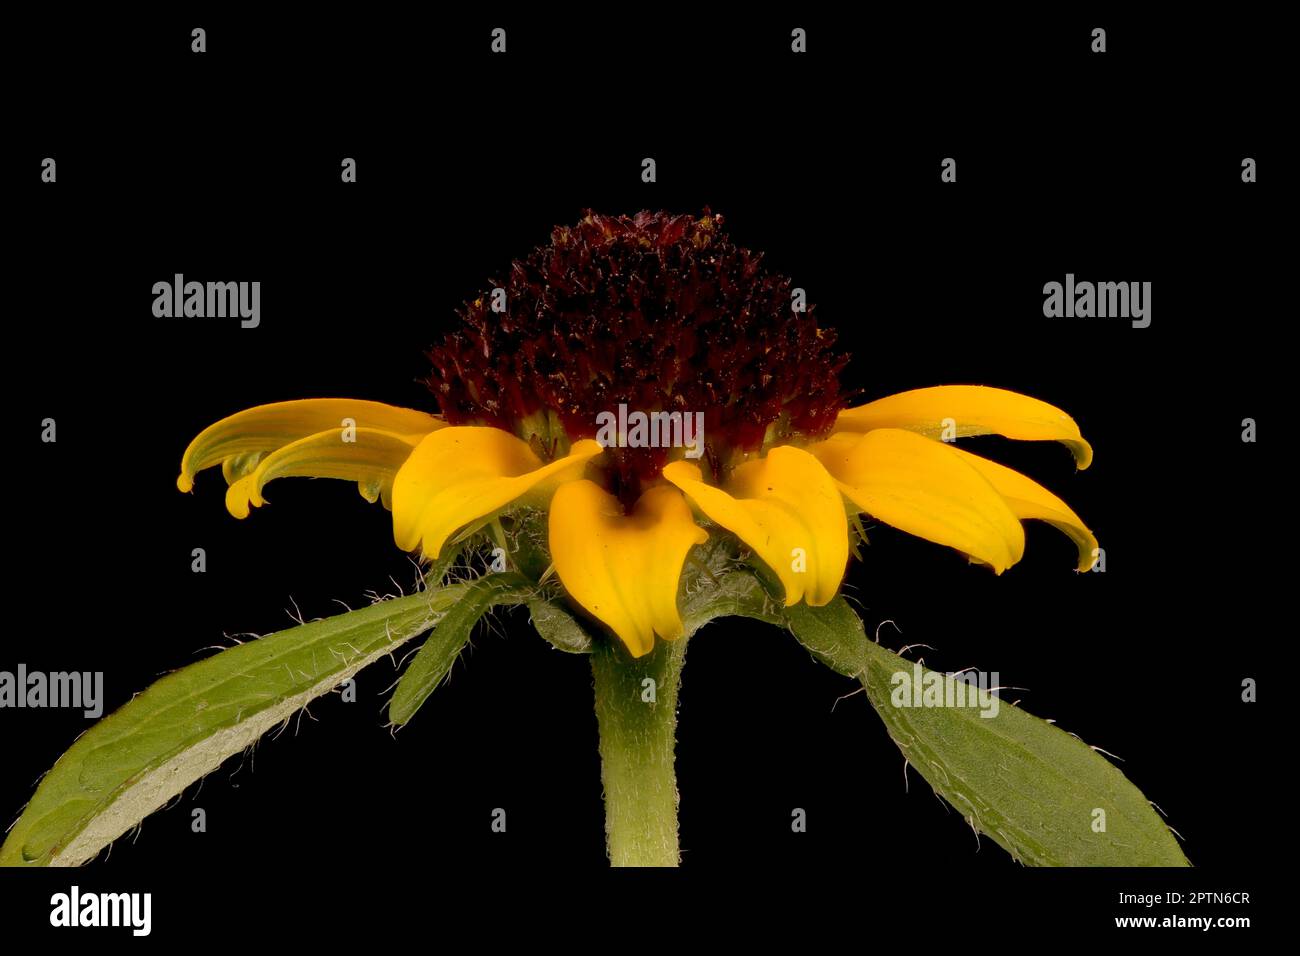 zinnia (Sanvitalia procumbens), un grincement mexicain. Gros plan sur le capitule fleuri Banque D'Images